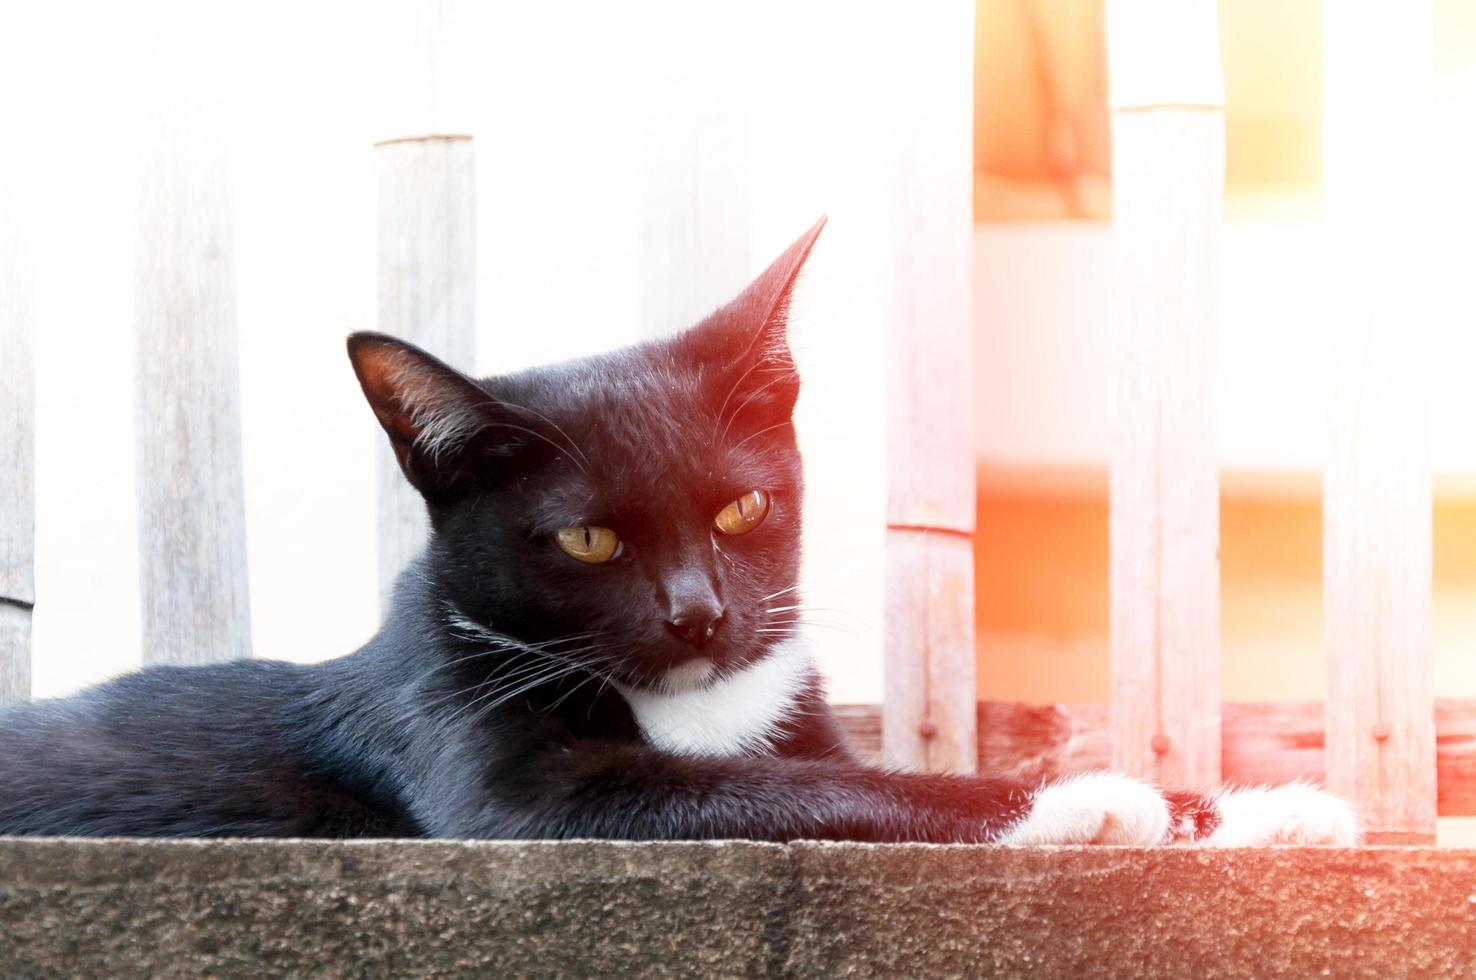 ung katt av en svart Färg på staket ,djur porträtt svart kattunge foto